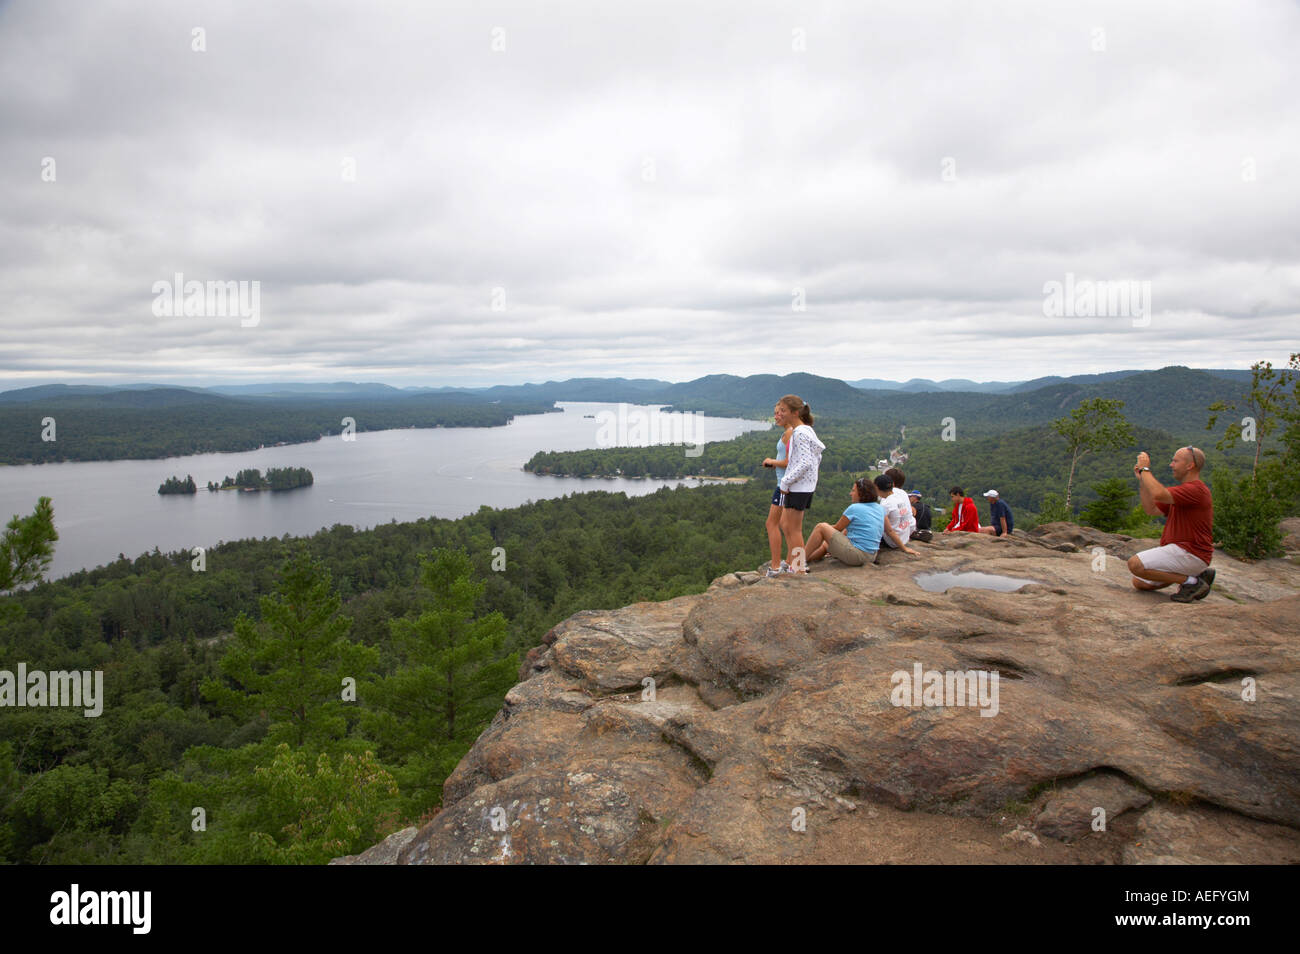 Personnes regardant scène de quatrième lac dans la chaîne de lacs Fulton de Rocky Mountain dans les Adirondacks de l'État de New York Banque D'Images